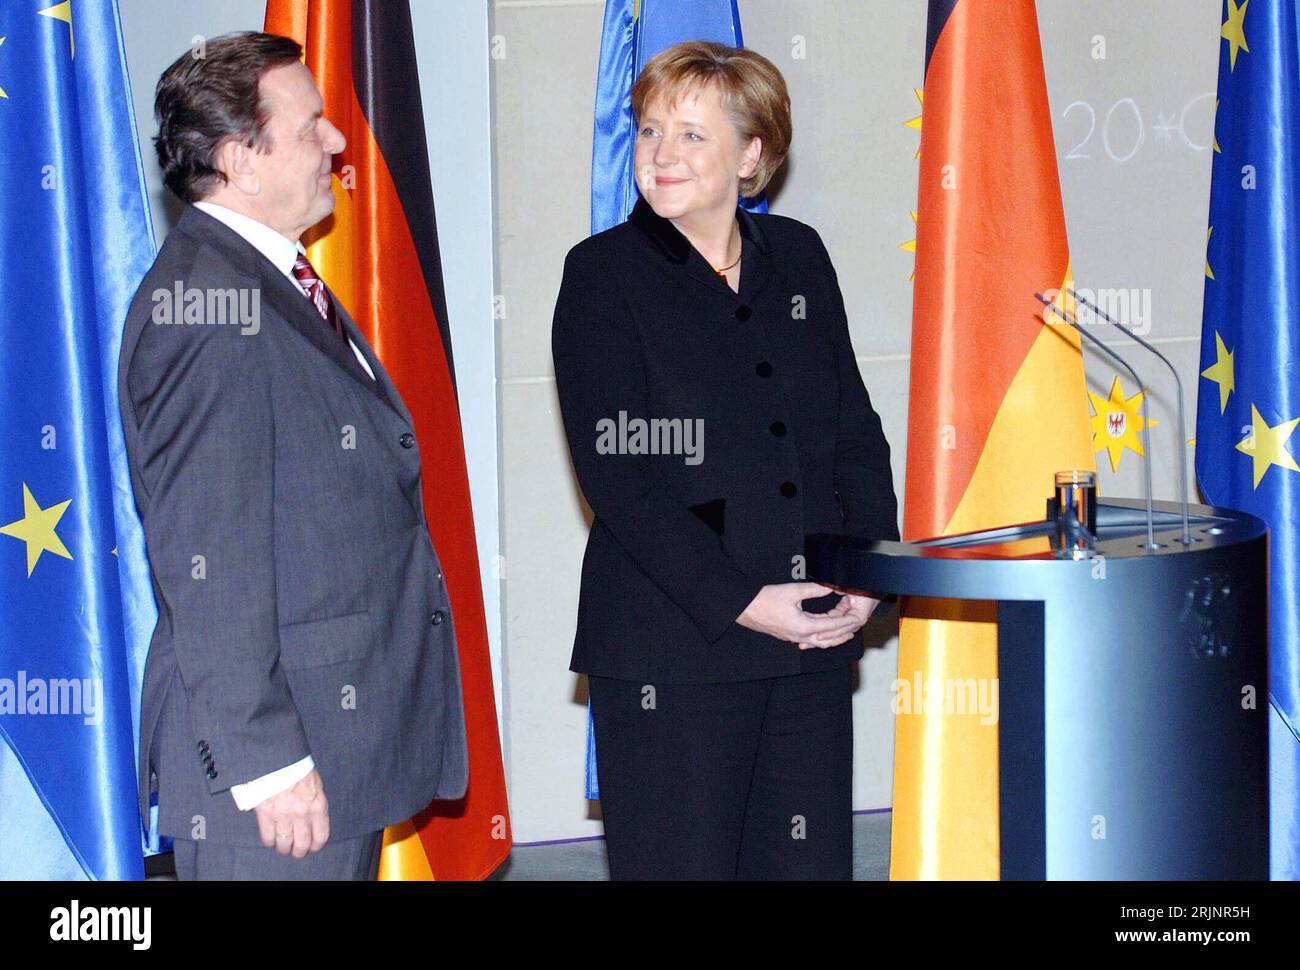 Bundeskanzlerin Angela Merkel Re., GER/CDU und ehemaliger Bundeskanzler Gerhard Schröder GER/SPD lächeln sich zufrieden an anlässlich der Kanzleramtsübergabe in Berlin - PUBLICATIONxNOTxINxCHN Foto Stock